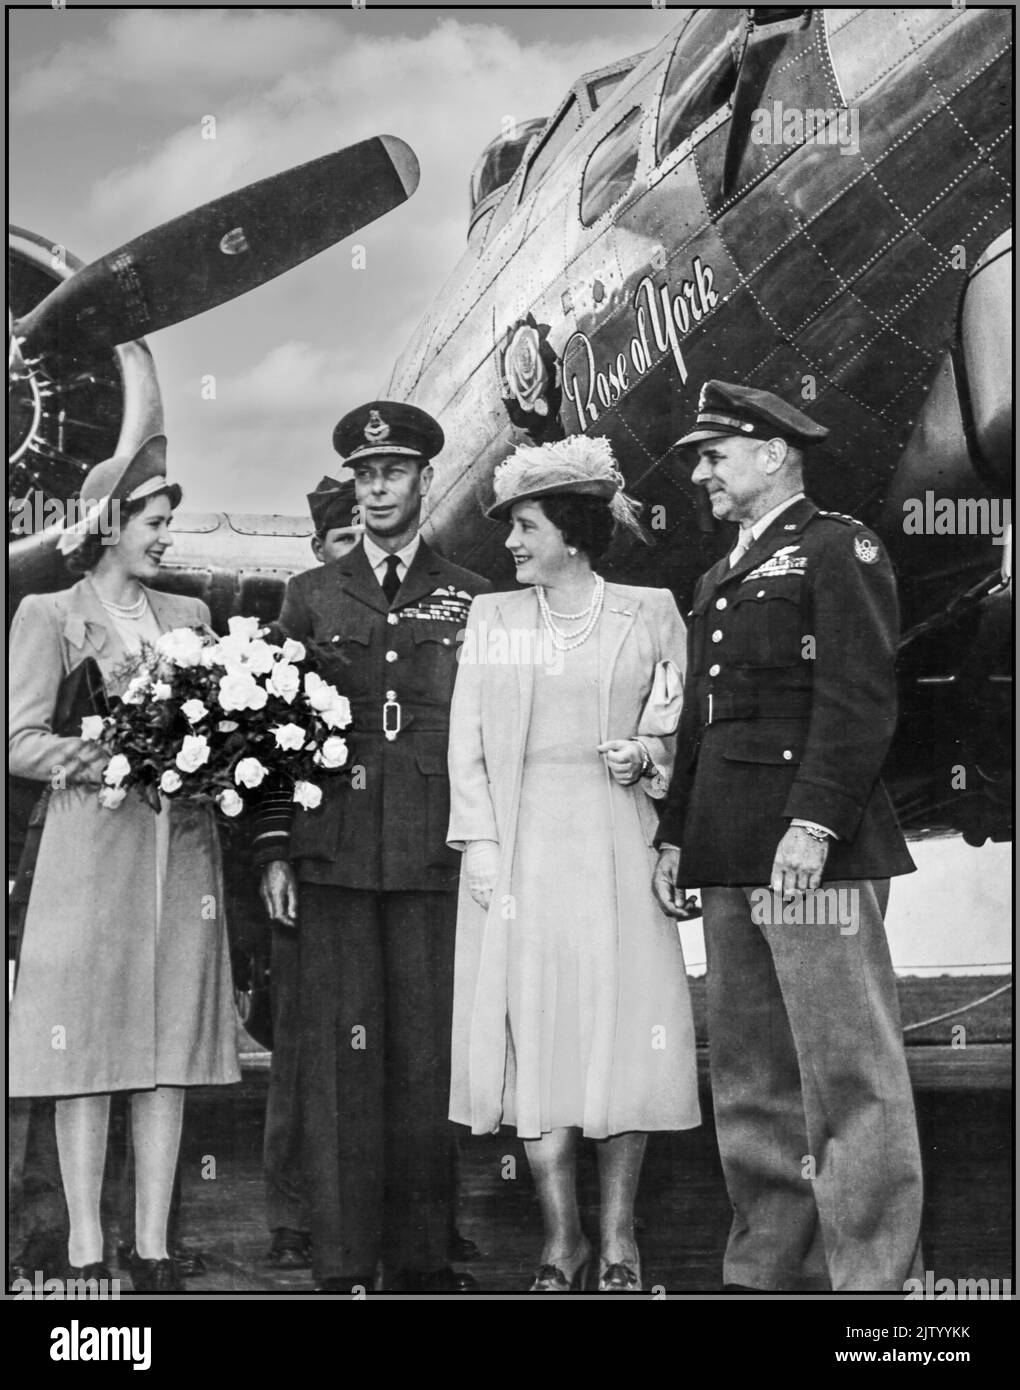 WW2 S.A.R. la princesse Elizabeth avec sa Majesté le roi George VI, maréchal de la Royal Air Force et sa Majesté la reine Angela Marguerite Bowes-Lyon Elizabeth à côté du lieutenant général James H. Doolittle, forces aériennes de l'armée américaine, commandant la huitième Force aérienne, le samedi 3 février 1945, la huitième Force aérienne, Sous le commandement du lieutenant-général James Harold (« Jimmy ») Doolittle, a exécuté la mission n° 817. Avec 1 003 forteresses volantes B-17, la cible principale du B-17s était le chemin de fer de Berlin en Allemagne nazie Banque D'Images